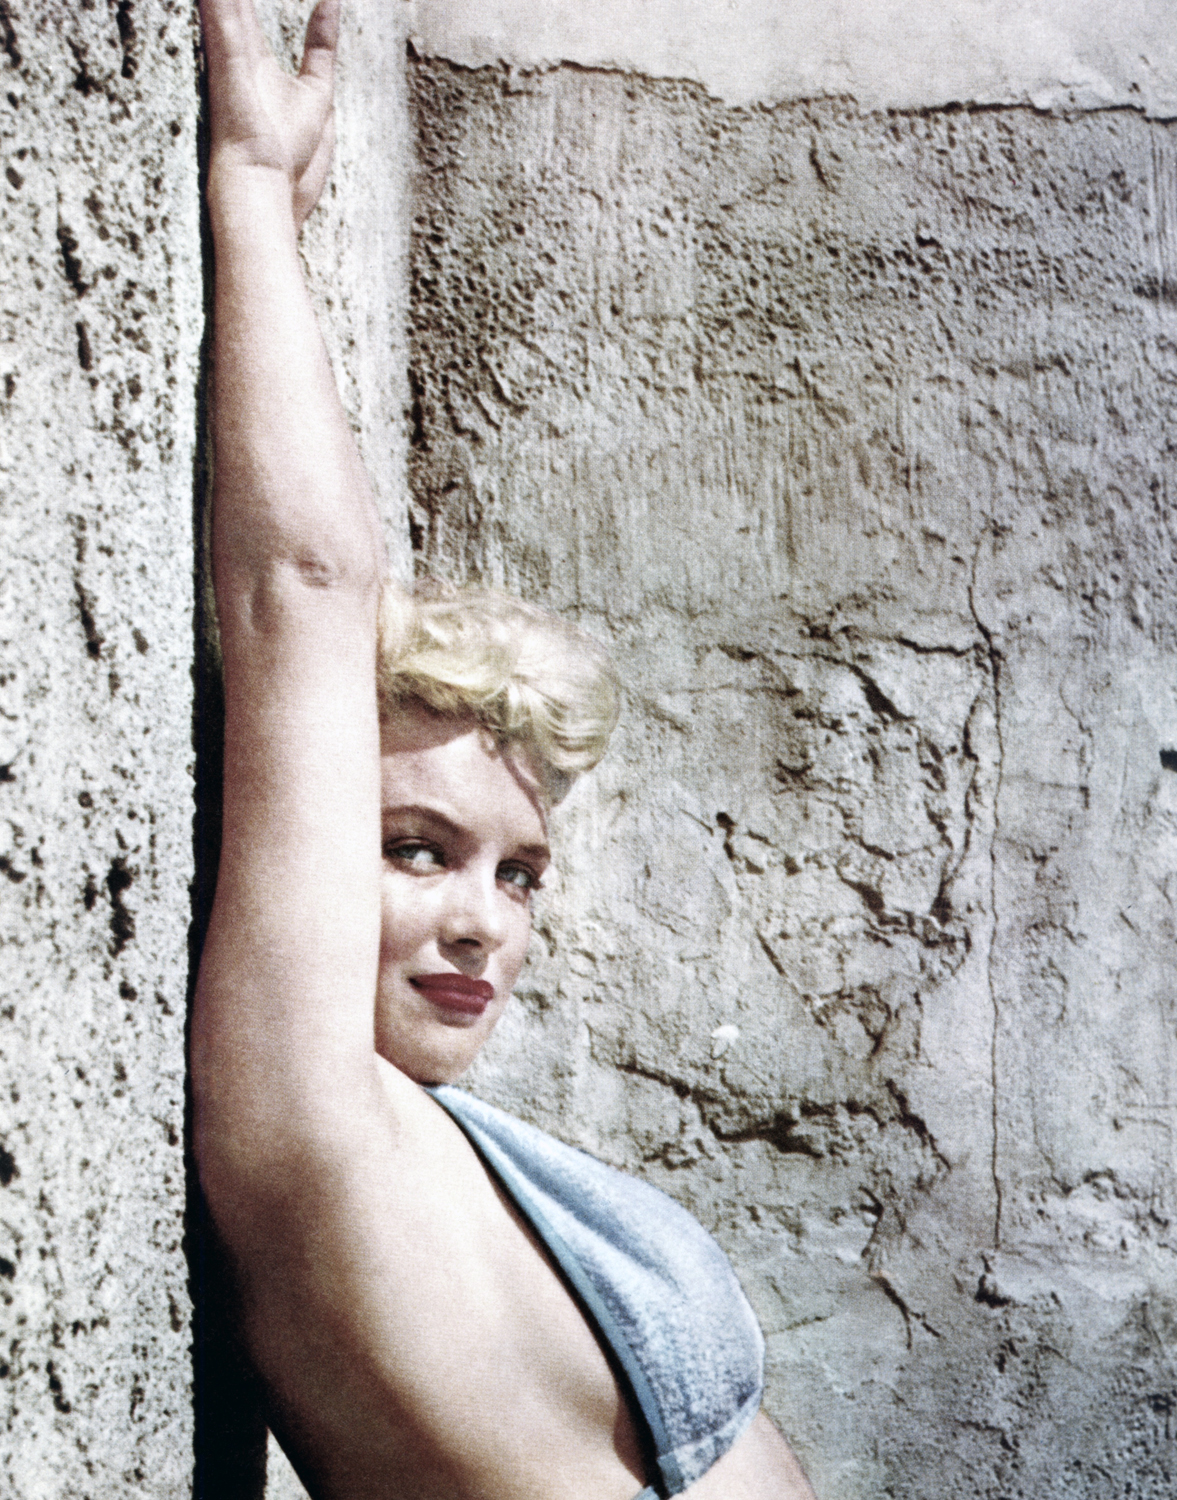 Monroe poses in a bikini top circa 1955.